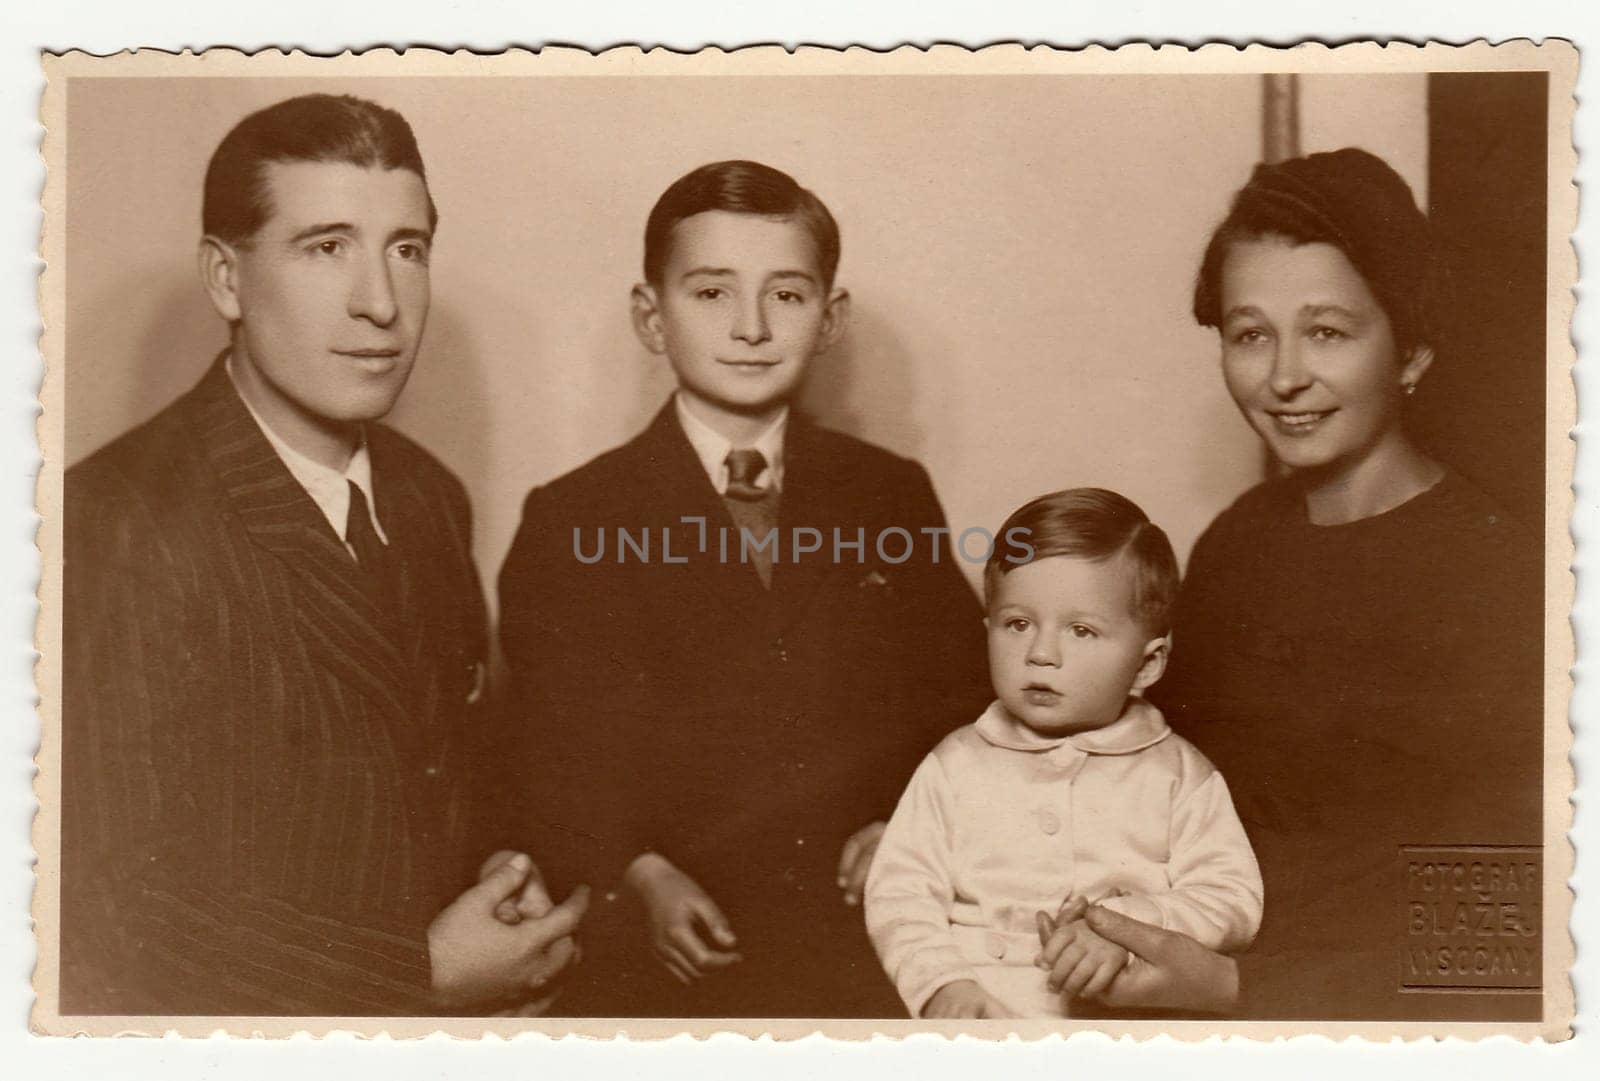 PRAGUE, THE CZECHOSLOVAK SOCIALIST REPUBLIC - CIRCA 1950s: Vintage photo shows family portrait.